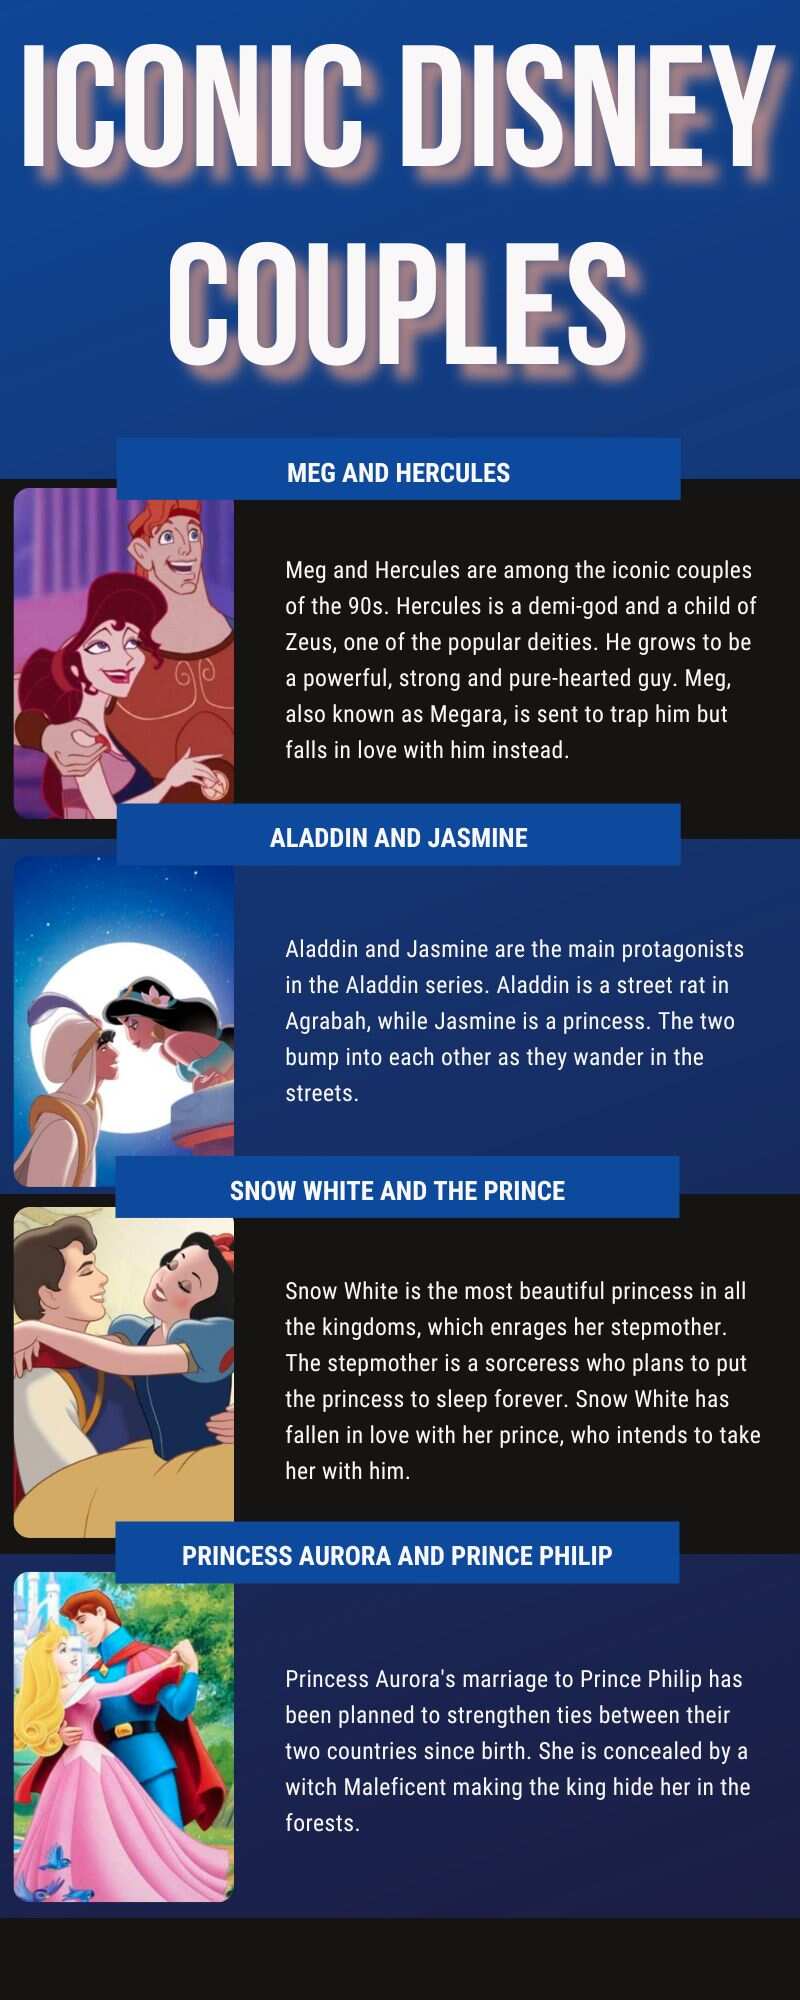 Iconic Disney couples